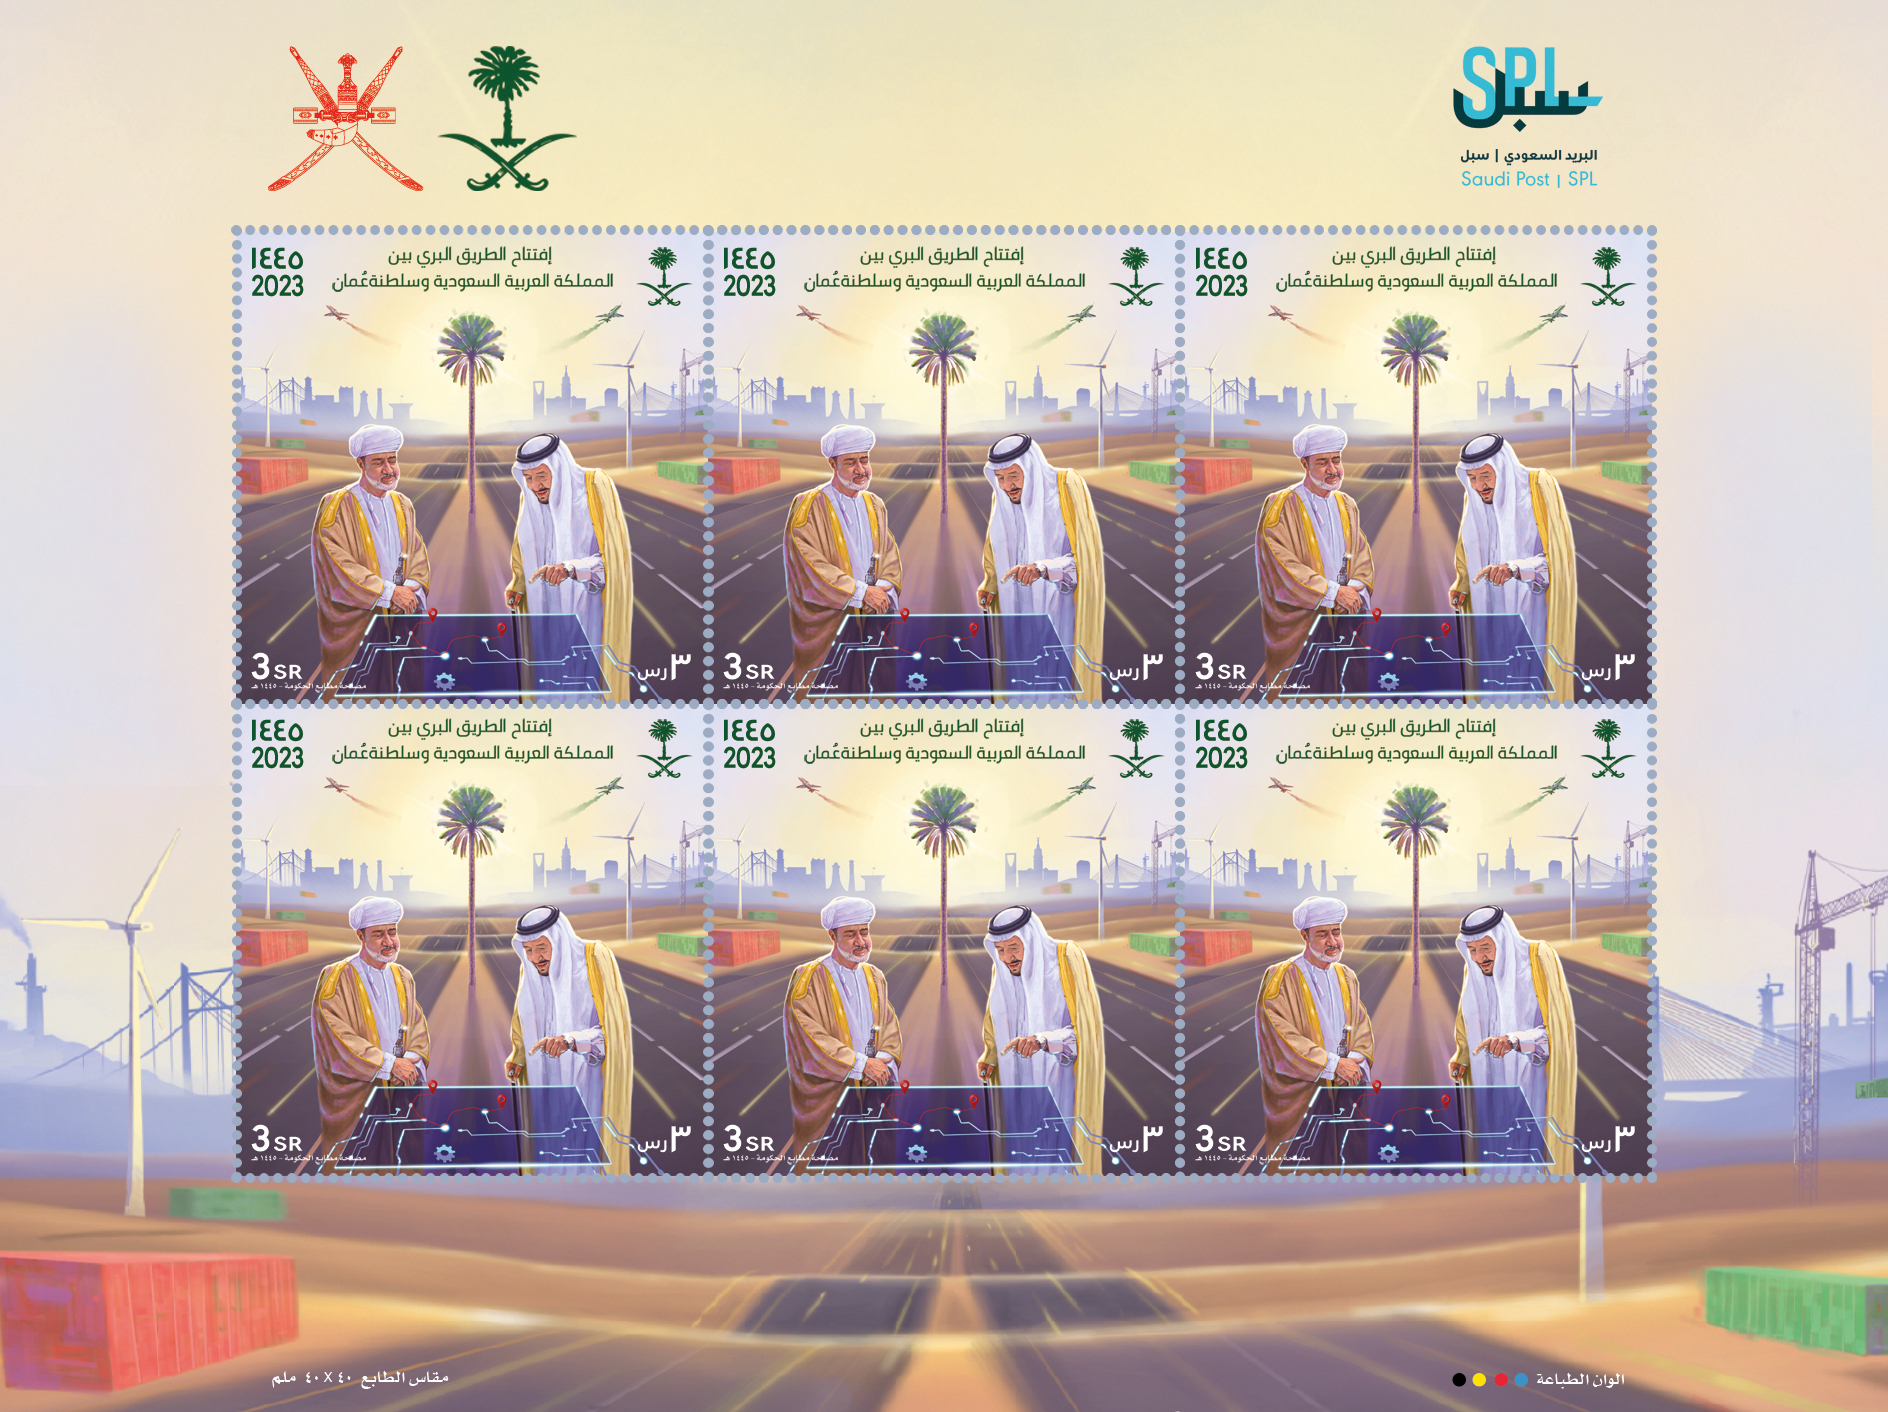 البريد السعودي والبريد العماني يصدران طابعاً بريدياً احتفاءً بافتتاح الطريق البري بين البلدين 